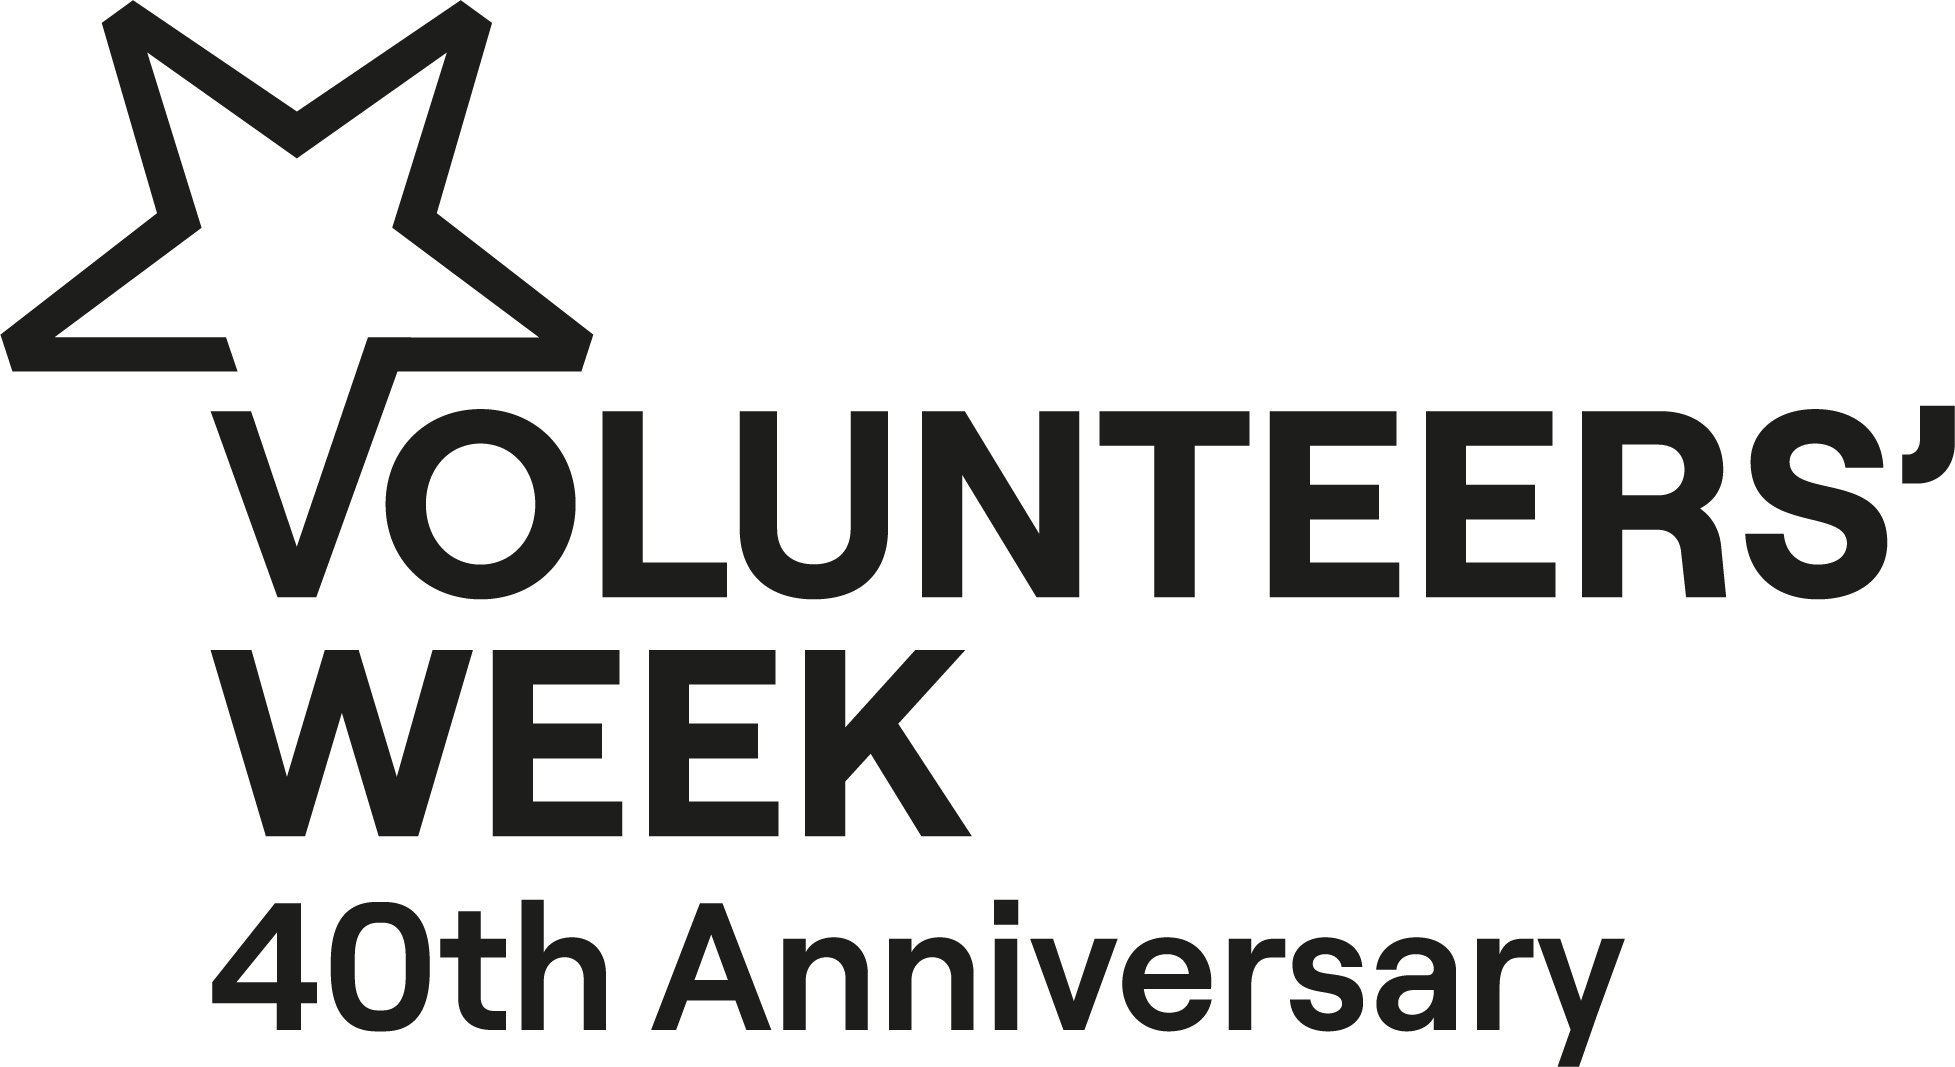 Volunteers' Week 40th anniversary